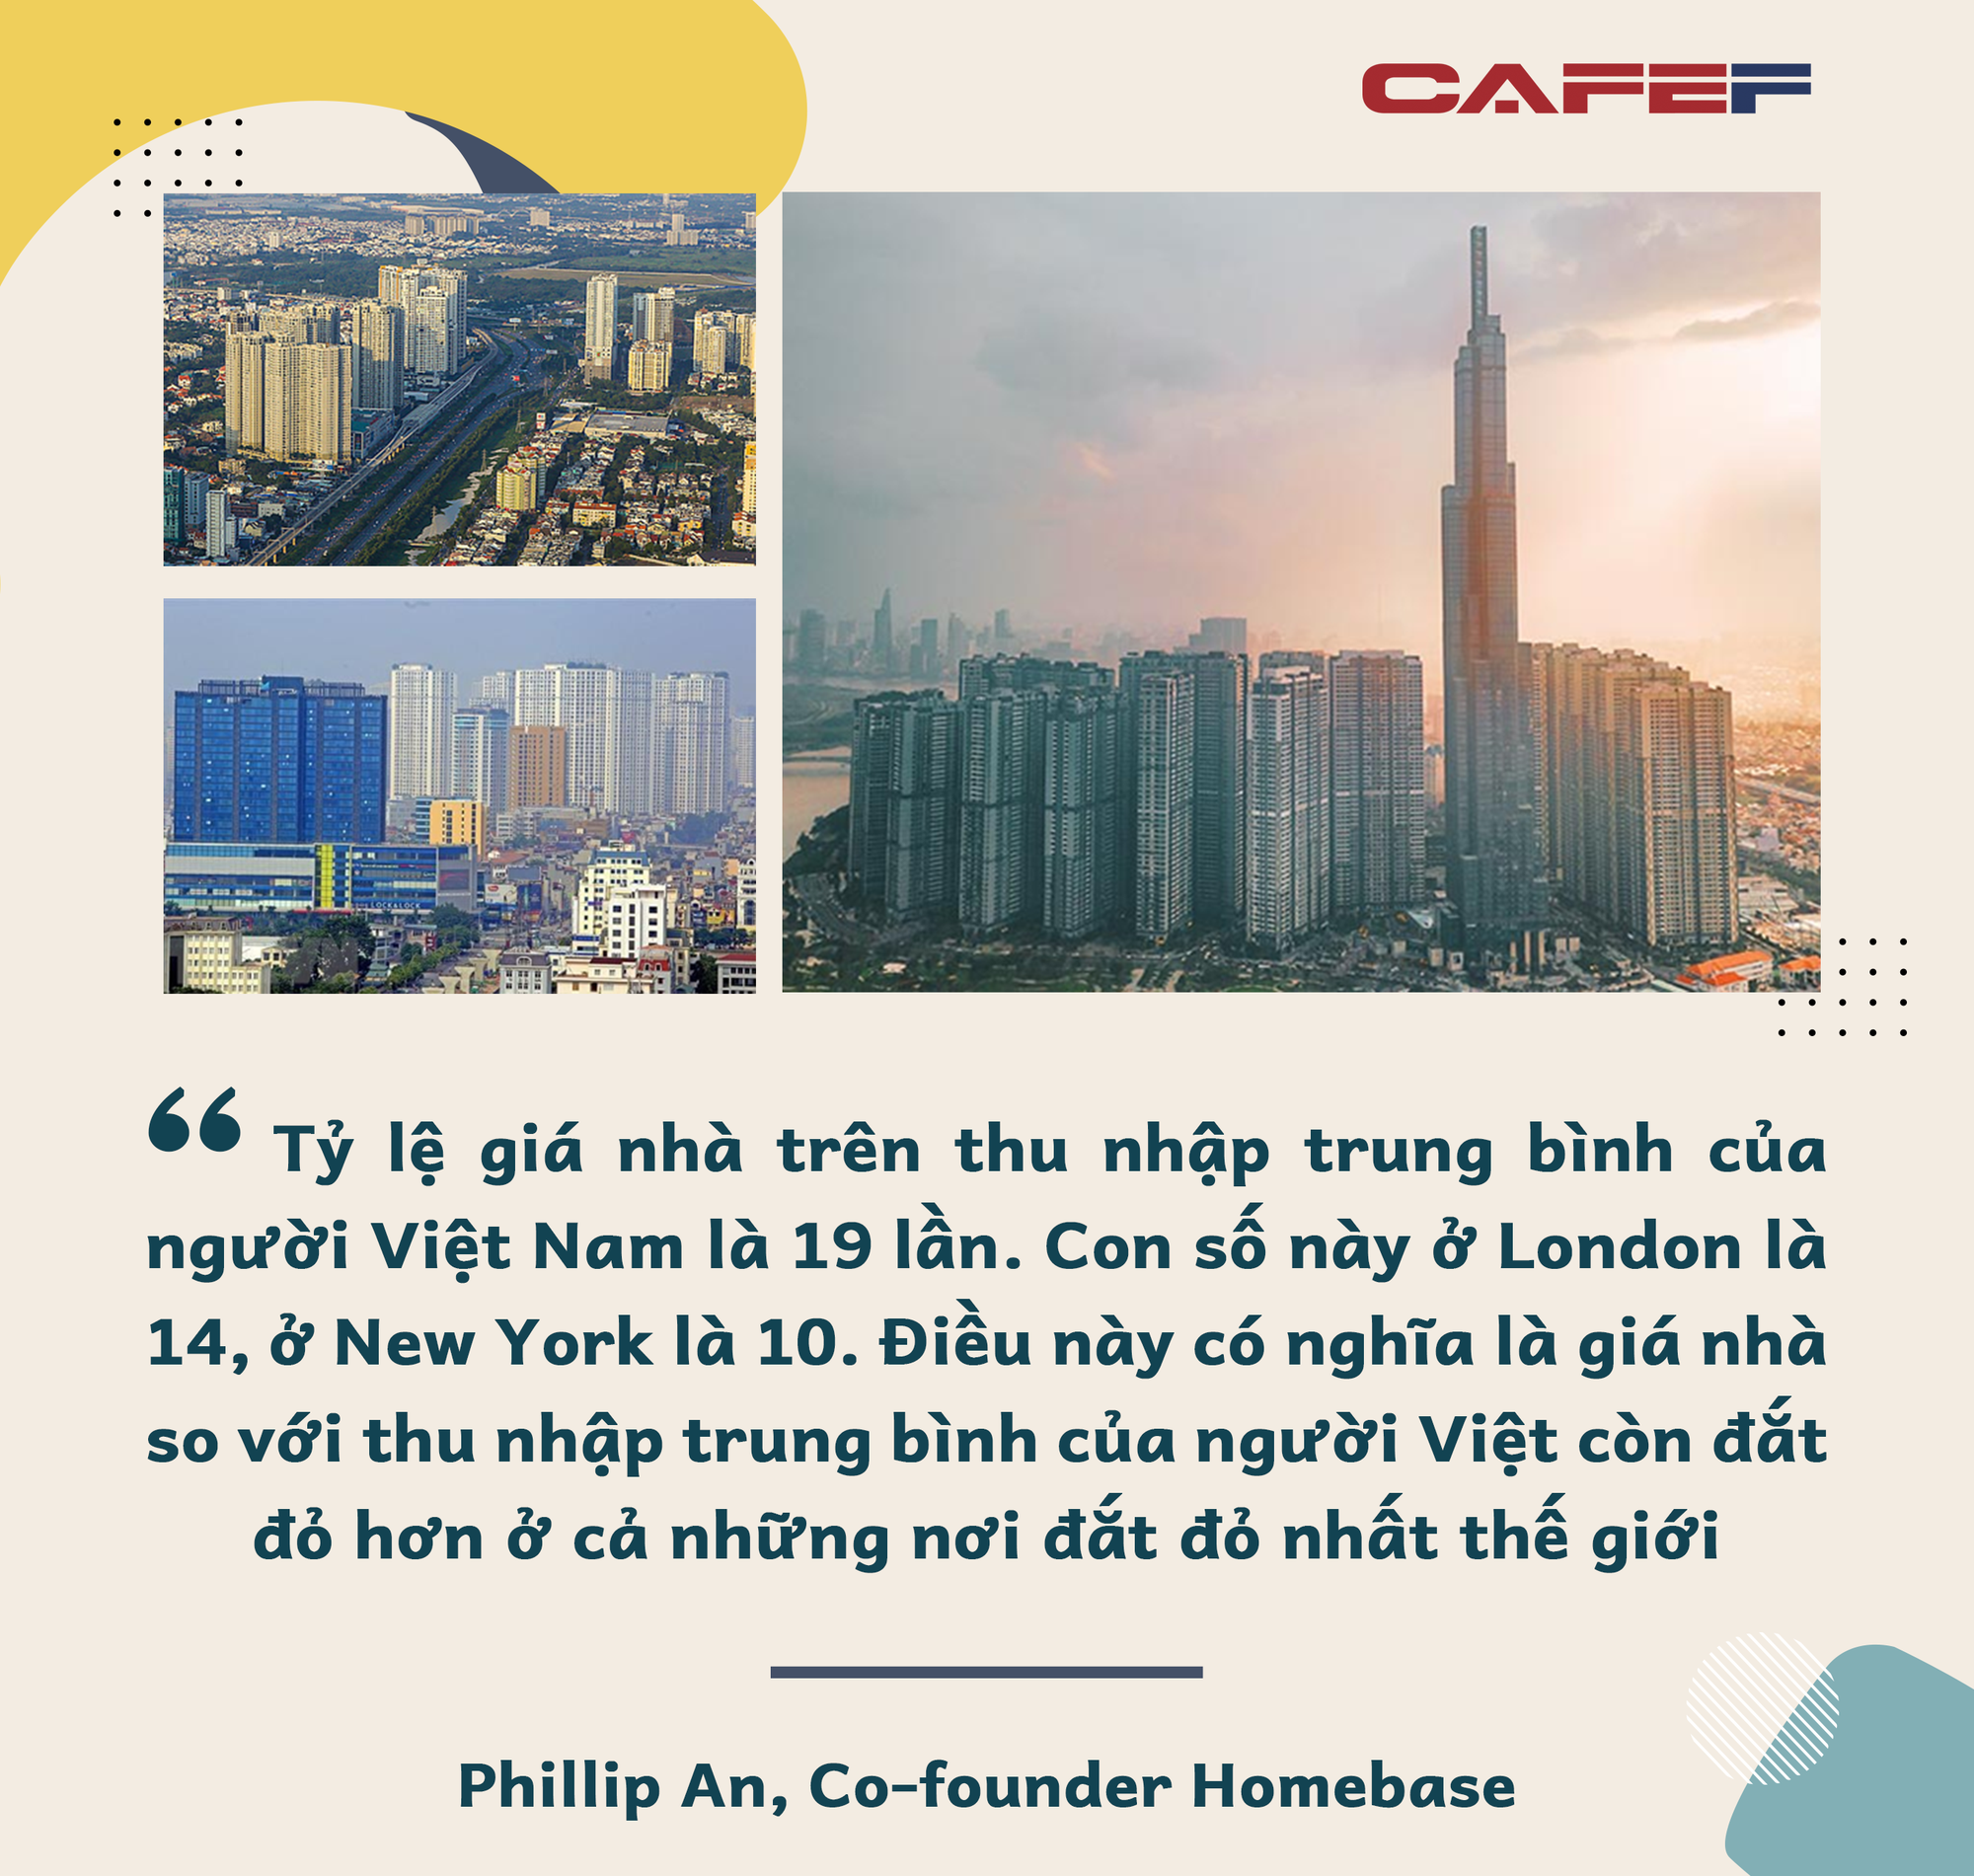 Co-founder Homebase: Giá nhà so với thu nhập trung bình của người Việt còn cao hơn cả những nơi đắt đỏ trên thế giới - Ảnh 4.